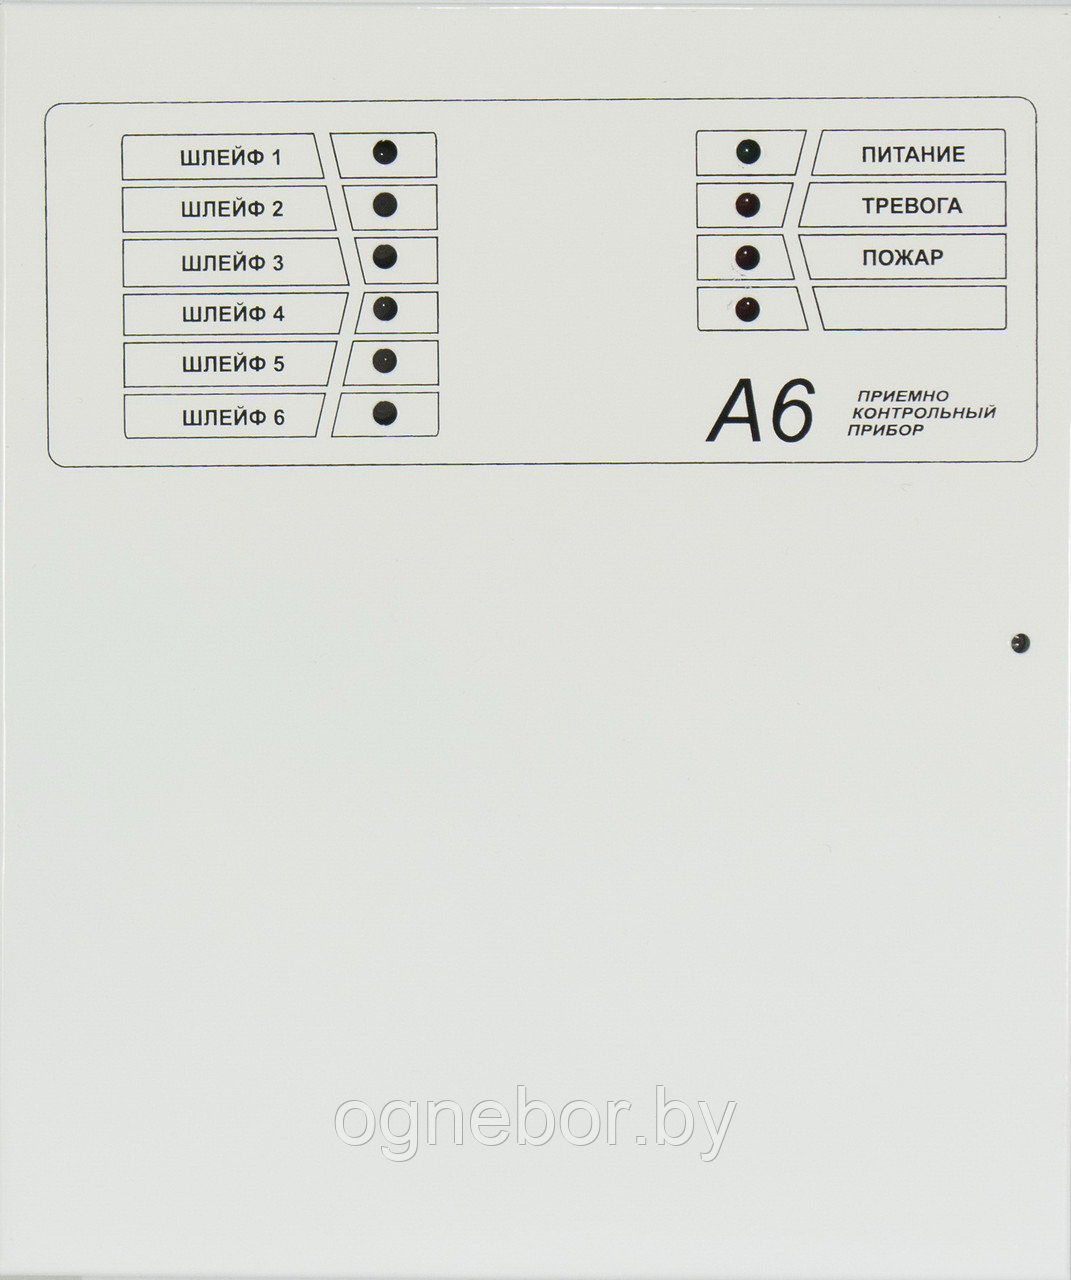 А6-06 Прибор приемно-контрольный (ПКП)